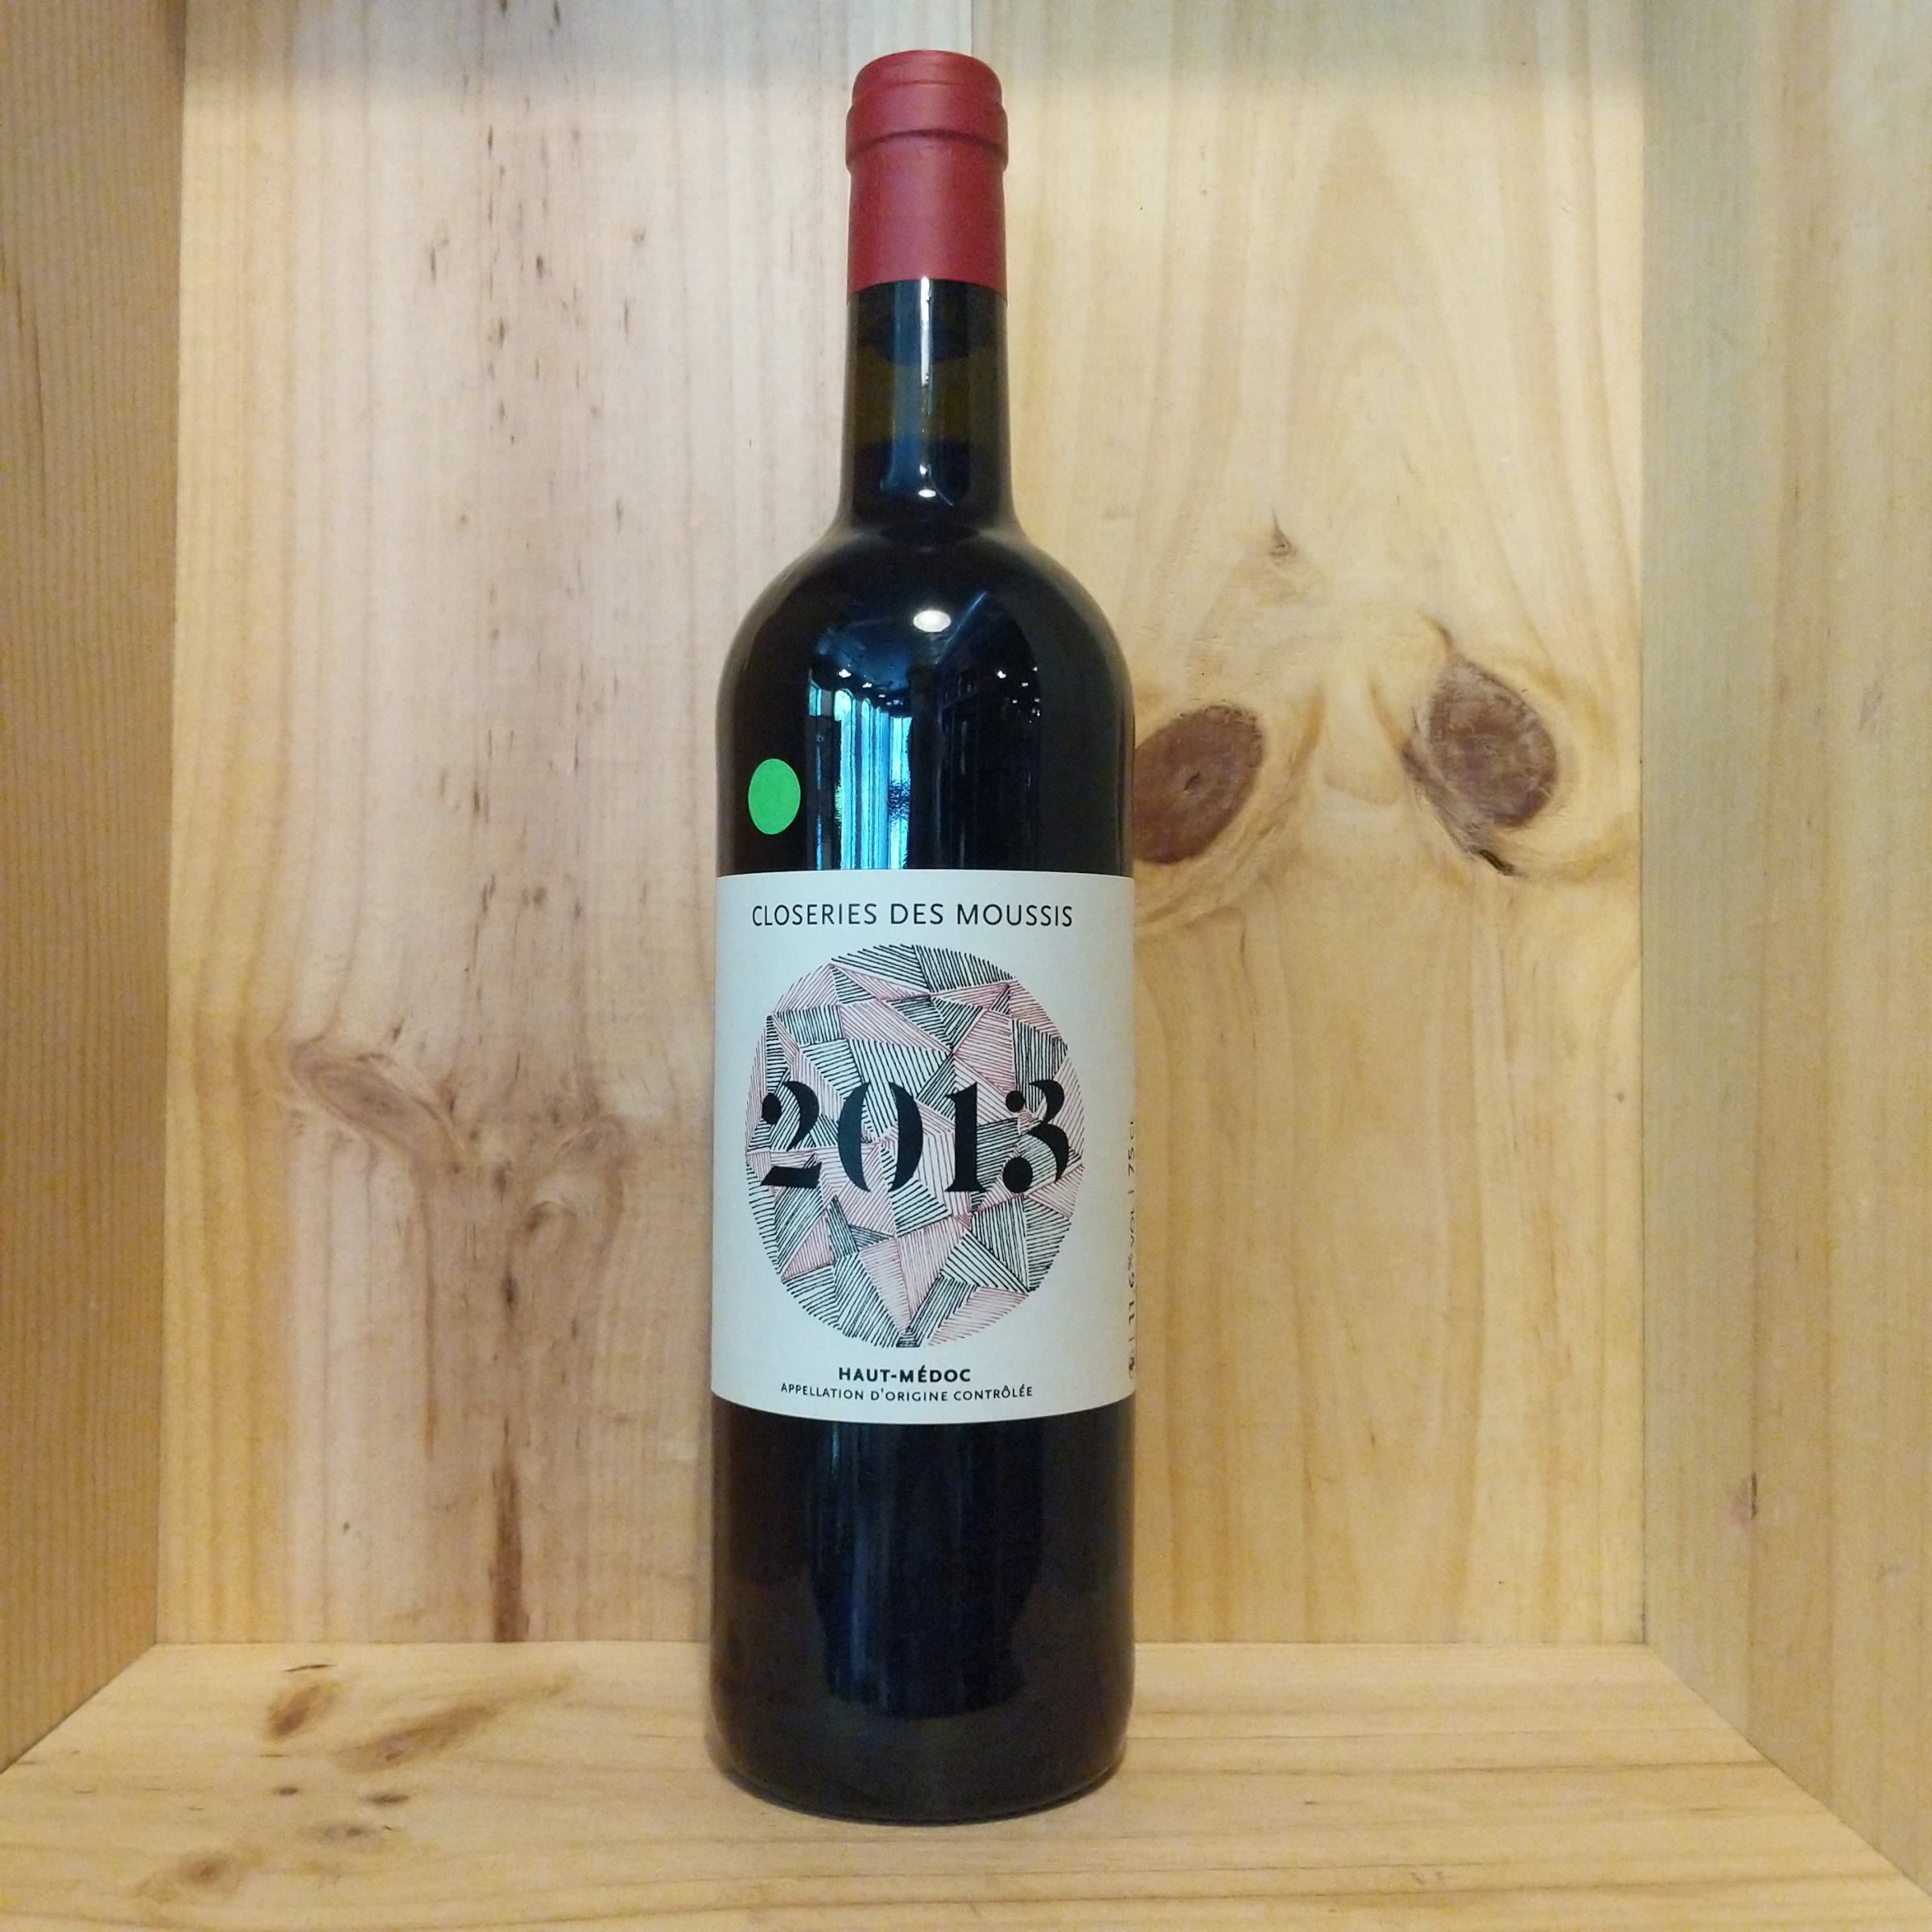 Wine Red - Closeries des Moussis, Haut-Medoc 2013 - Bordeaux, France